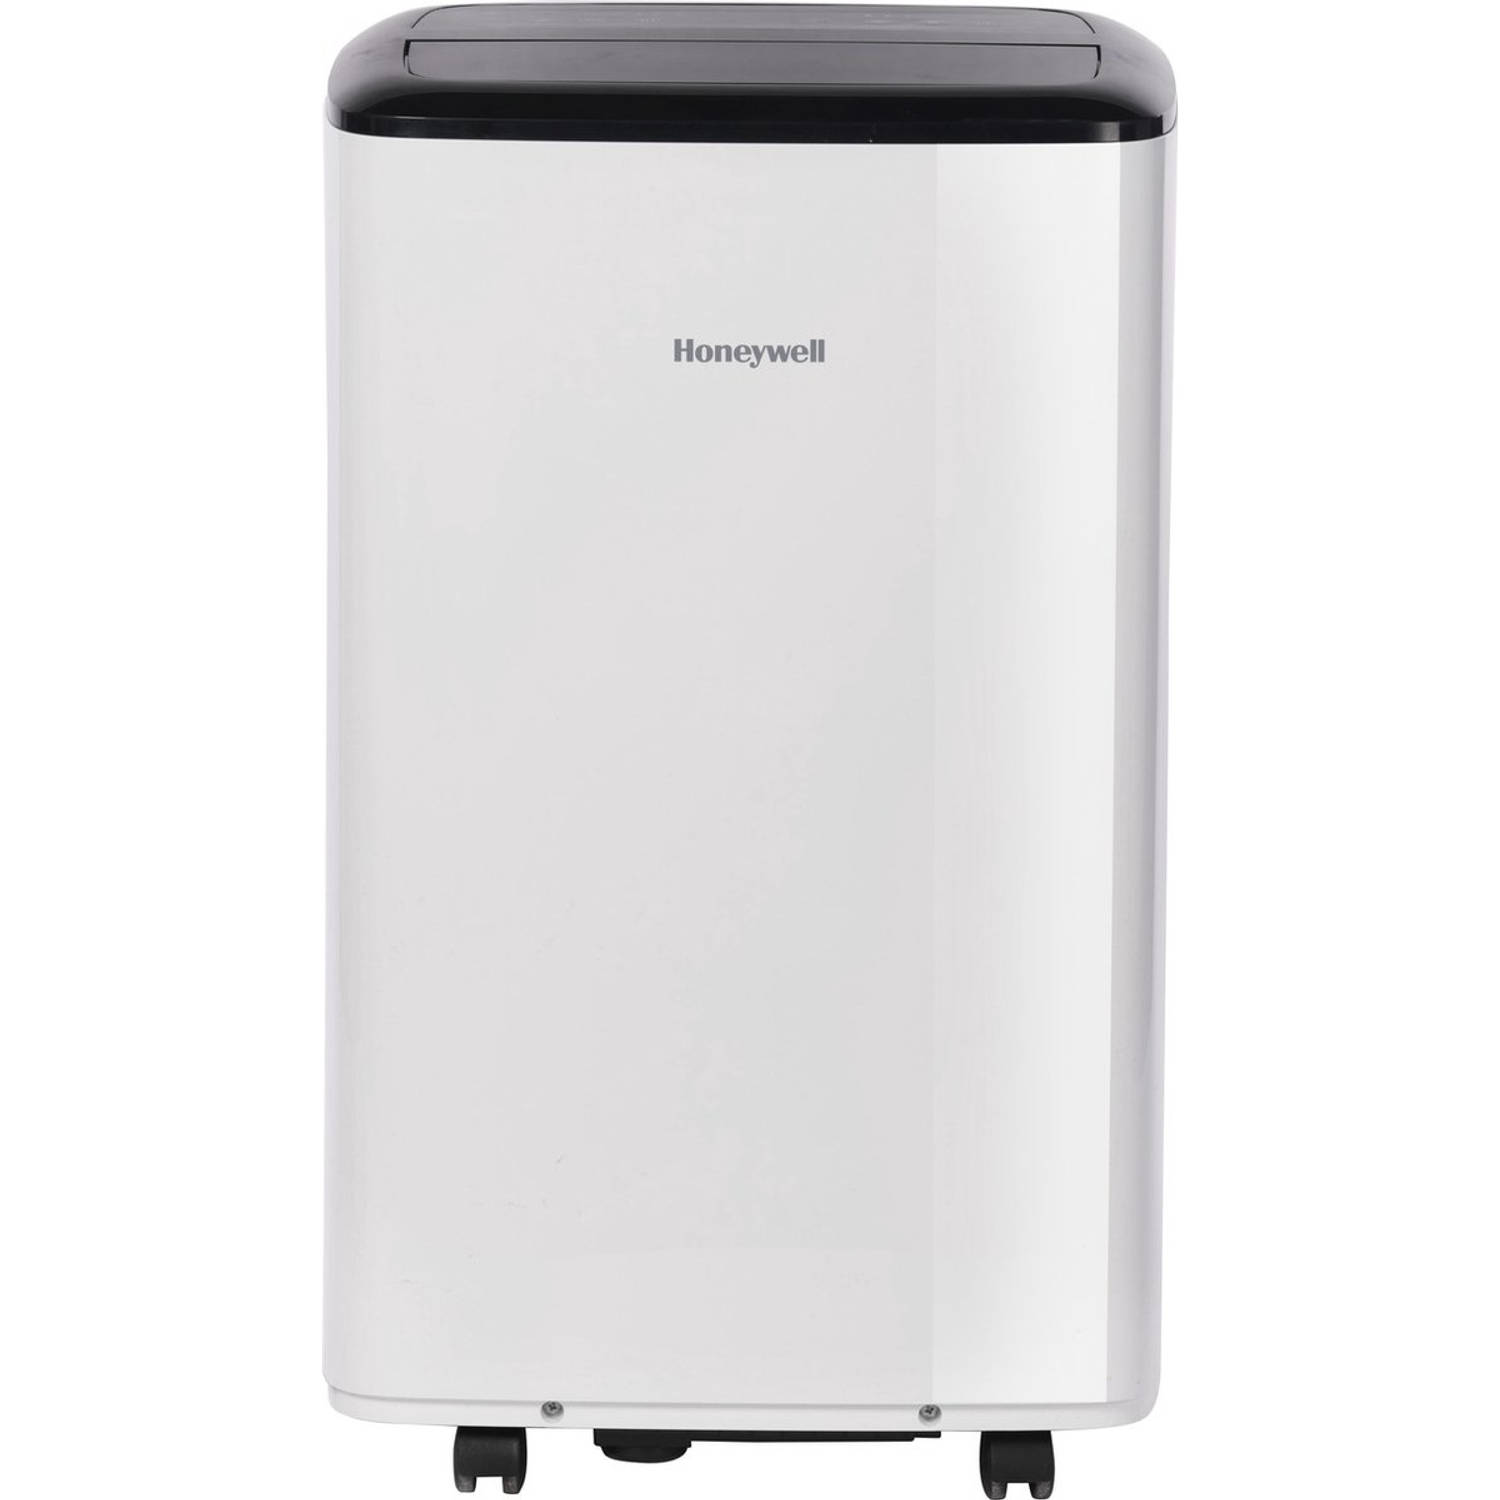 Honeywell Mobiele Airco Hf08ces 2450 Watt 8.000 Btu 3 In 1 Cooler Met Afstandsbediening Wit